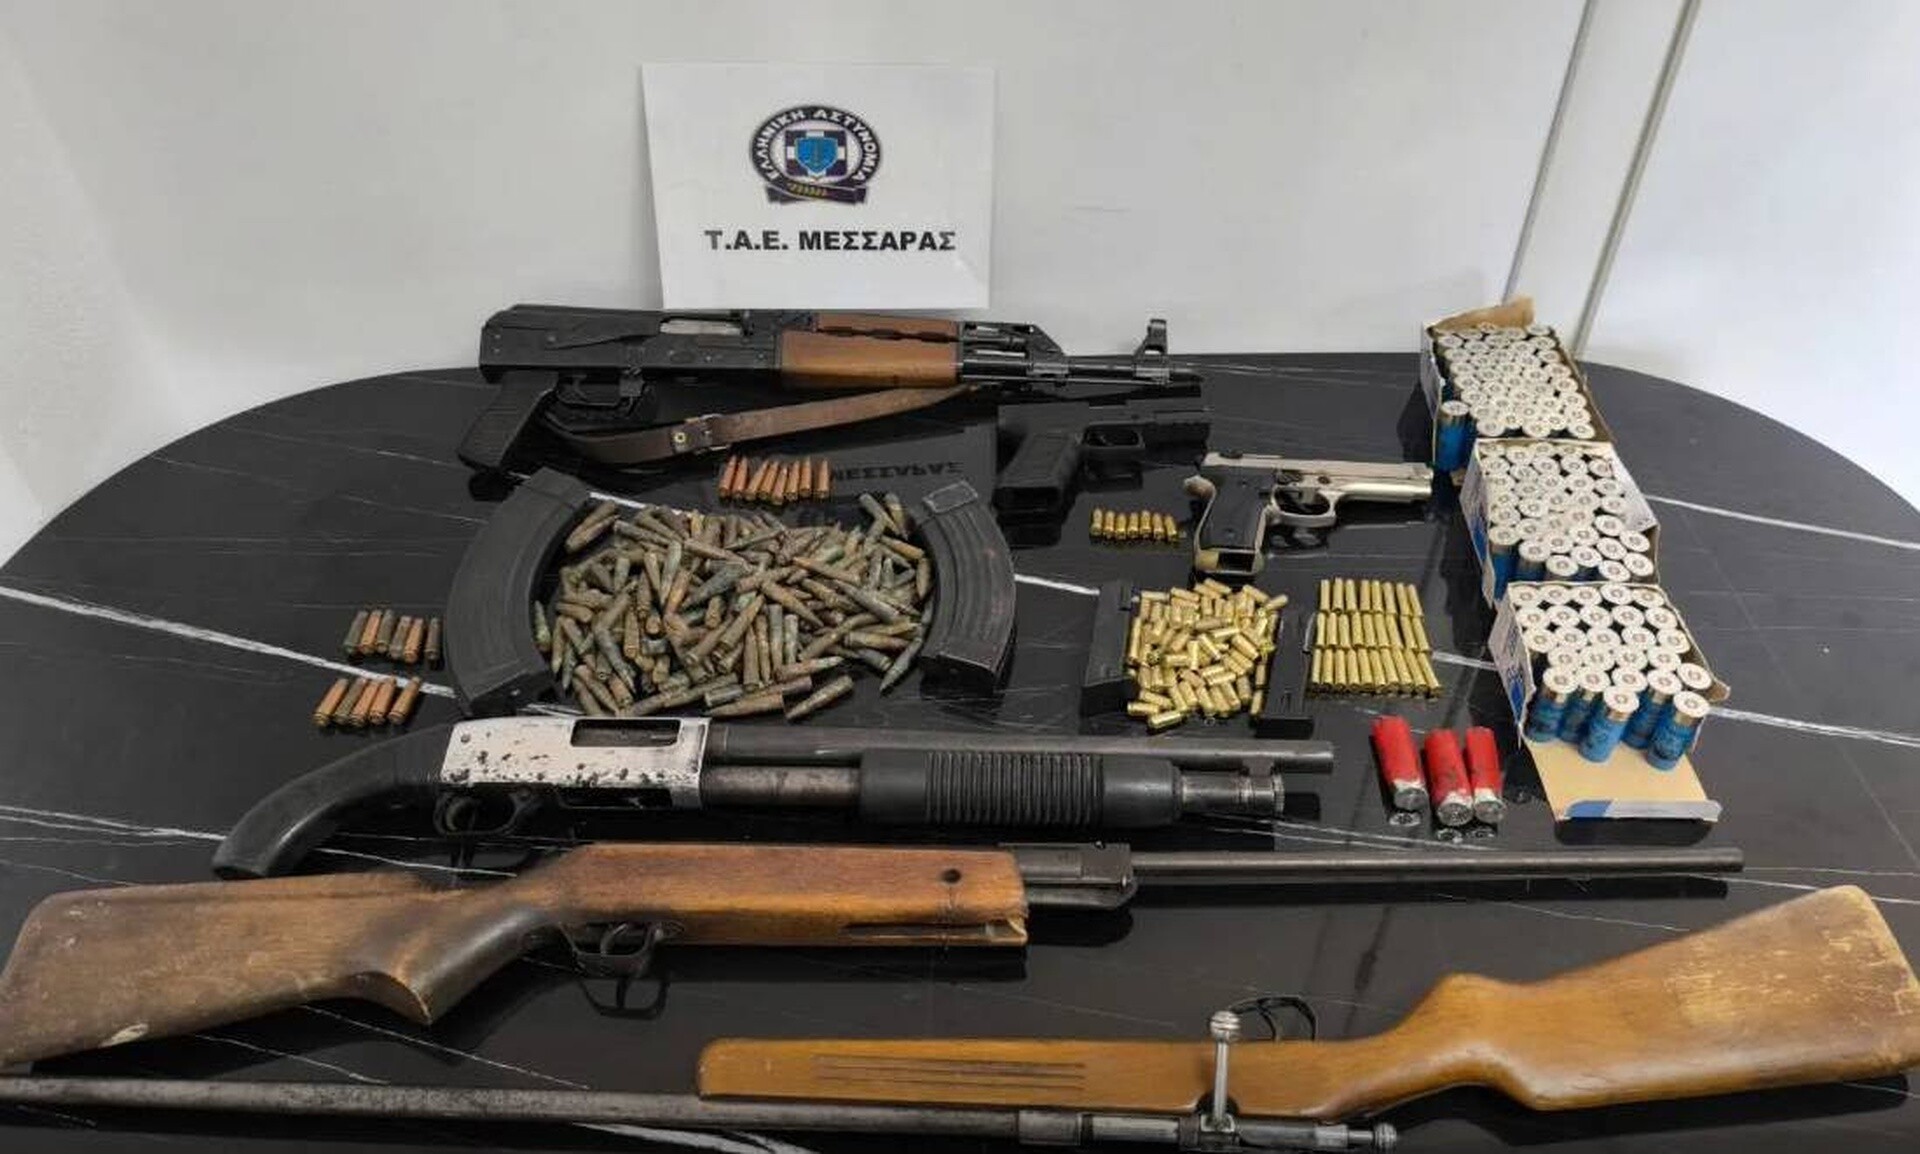 Ηράκλειο: Συνελήφθη 25χρονος για όπλα και άσκοπους πυροβολισμούς